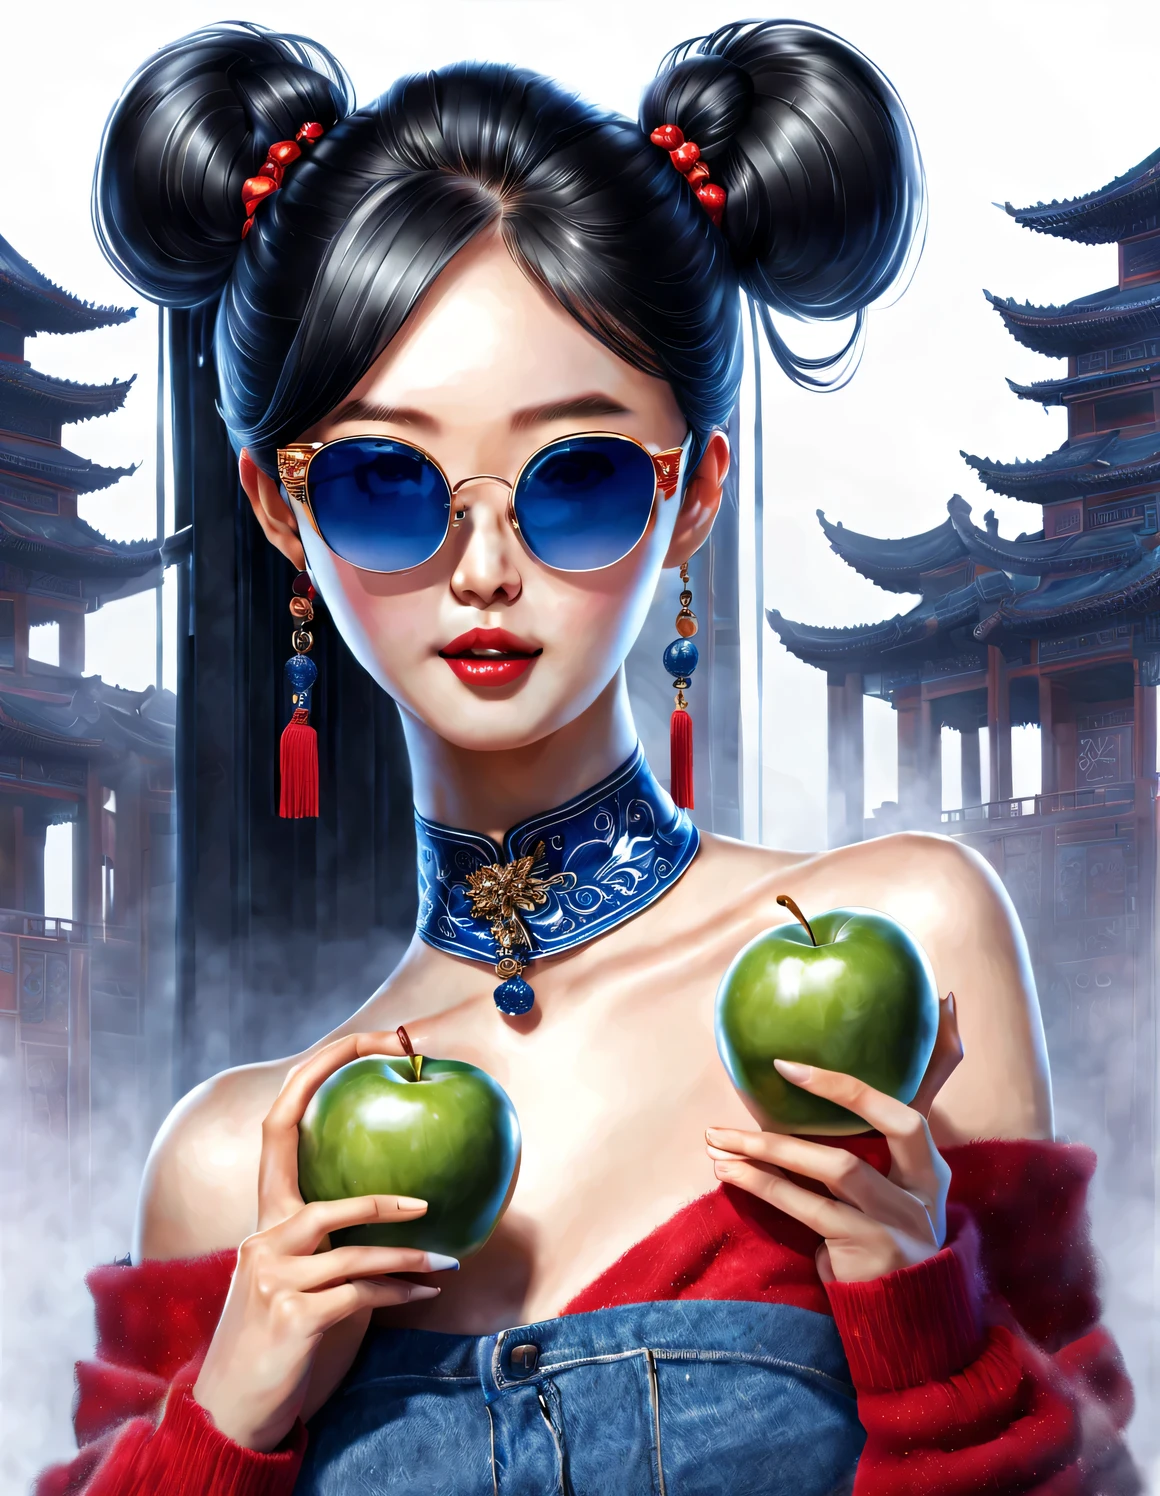 (角色构想), (半身特写), (美丽的中国女孩赤脚拿着苹果: 1.3), (戴着大墨镜，扎着厚厚的马尾辫: 1.2), 古典与现代的和谐结合, 深蓝色毛衣和牛仔裤, 红色围巾外套, 现代时尚服装, 优雅, 女孩白皙无瑕光滑的皮肤, 高鼻梁, 抬头姿势, 悲伤而美丽, 身材苗条, 精致的五官,
旋涡雾插图, 水墨画, 黑发, 球头, 自豪的, 超现实主义, 当代艺术摄影, 行动绘画插图, 抽象表现主义, 皮克斯, 景深, 运动模糊, 背光, 辐射, 衰退, 抬头角度, 索尼 FE 总经理, 超高清, 杰作, 准确的, 纹理皮肤, 超级细节, 高细节, 高质量, 屡获殊荣, 最好的质量, 等级, 16千, 从下往上拍摄, 有趣的,